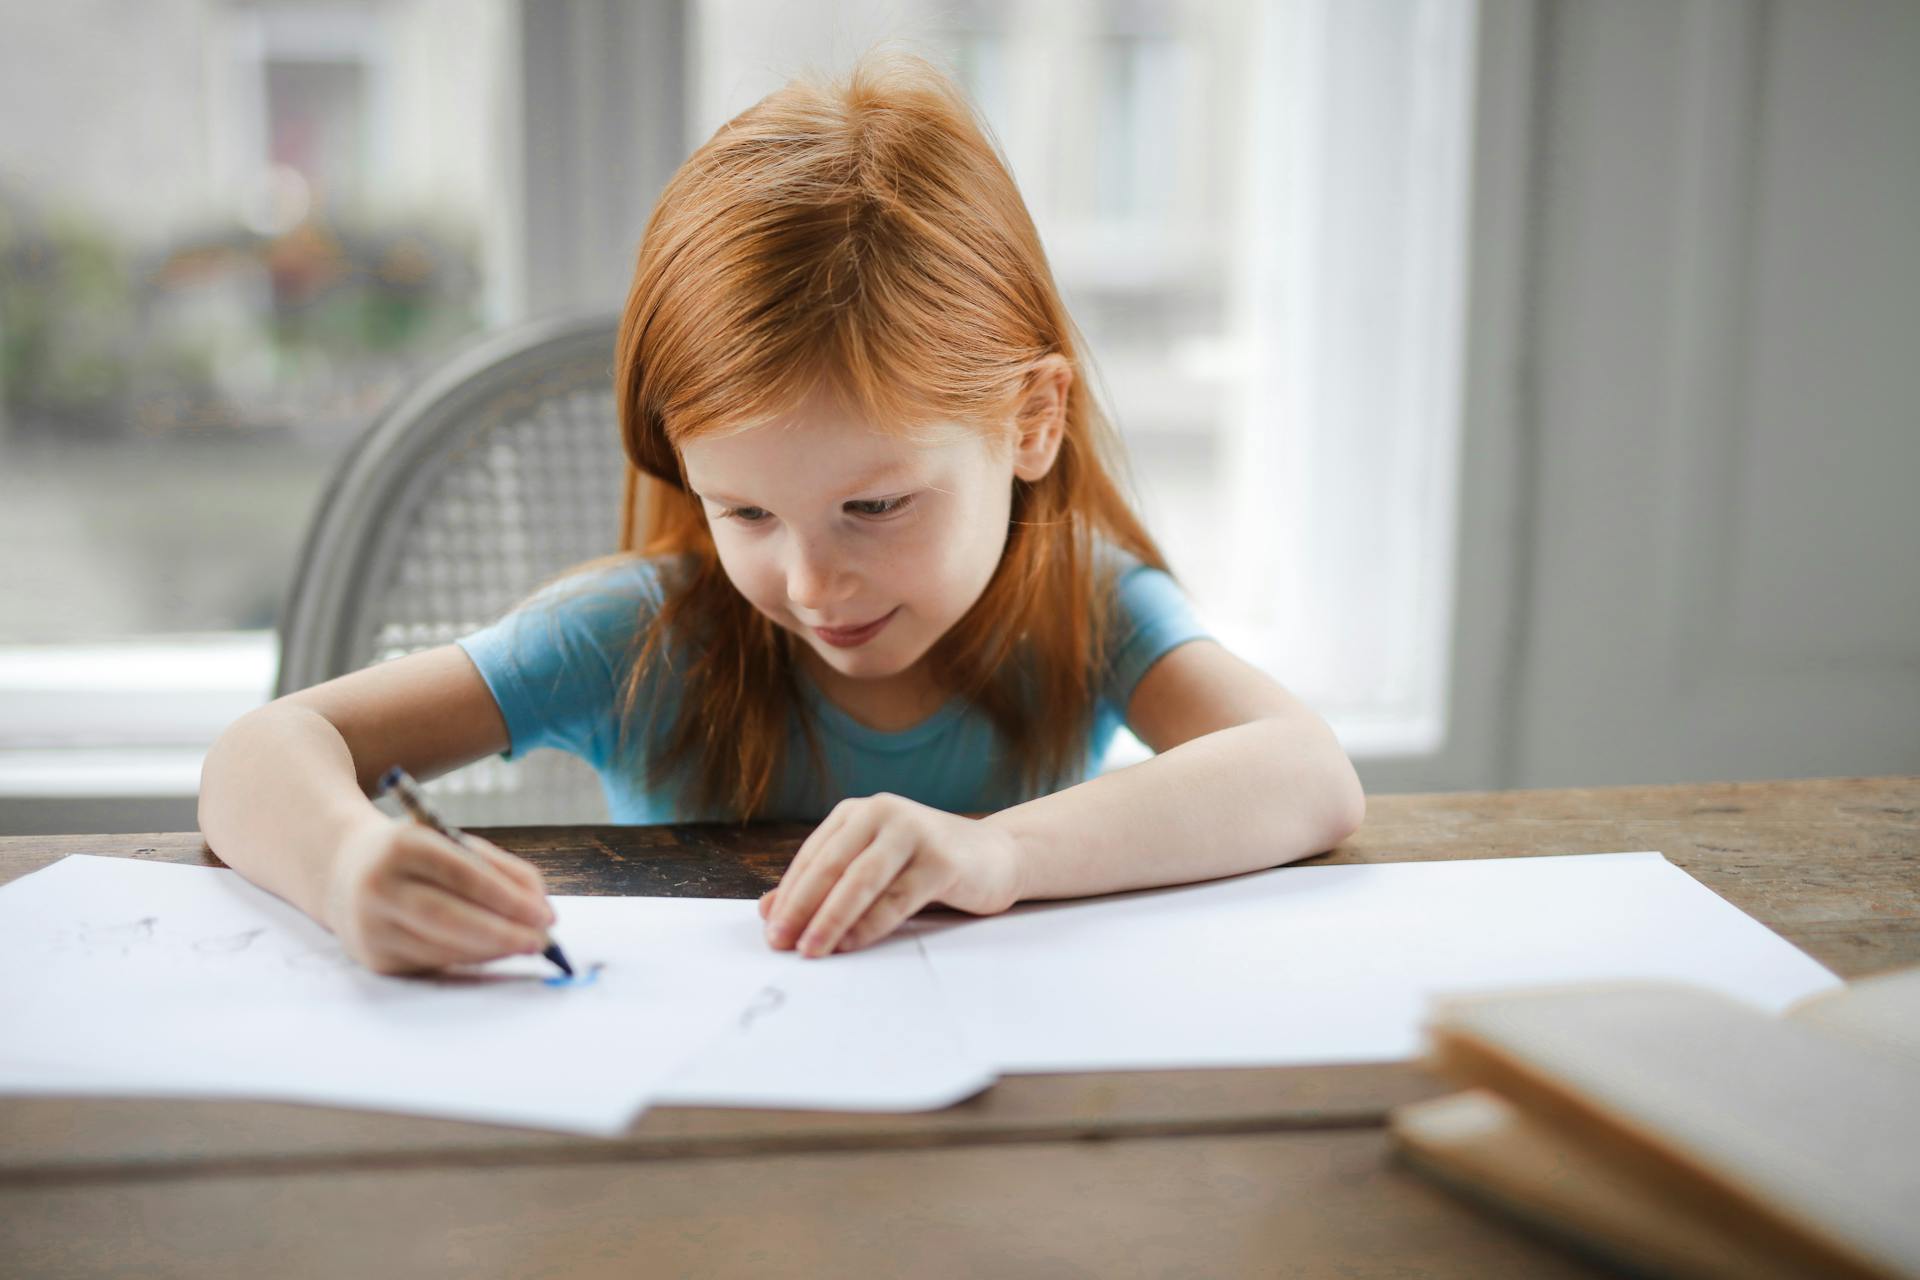 Un enfant assis à la table et qui fait du coloriage | Source : Pexels